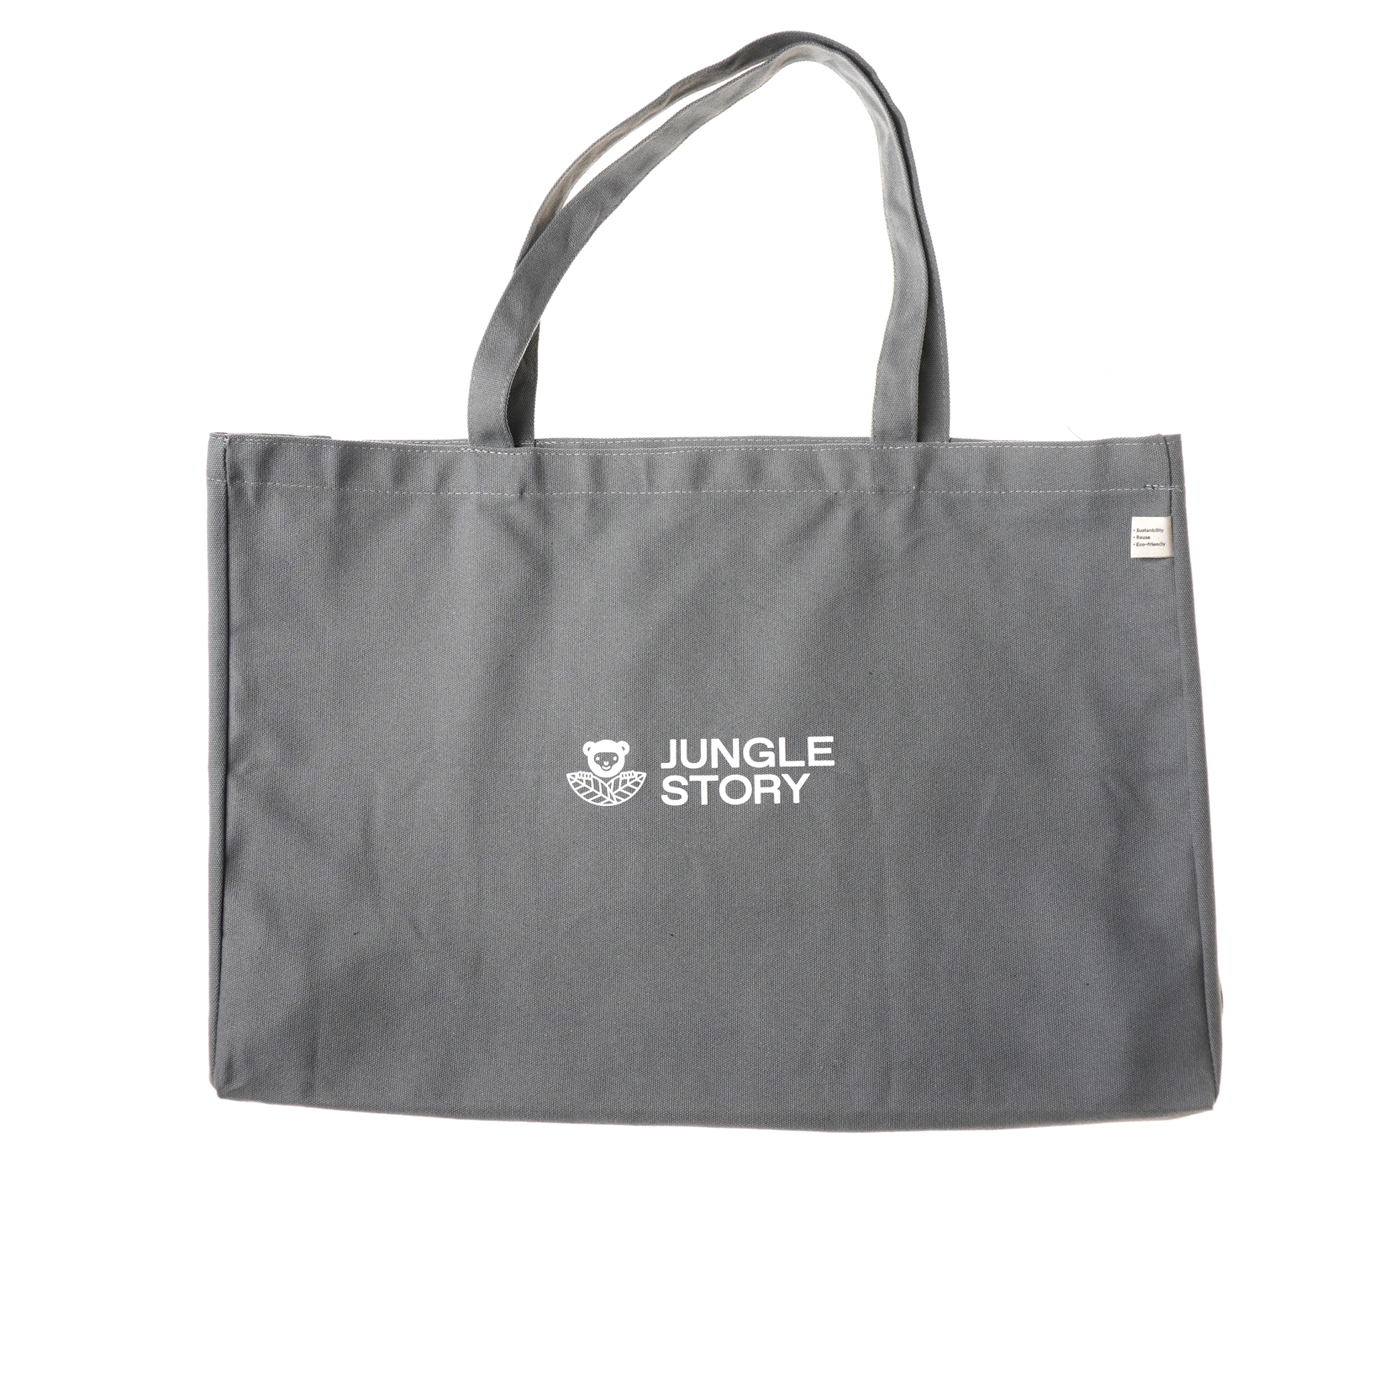 Cotton Tote Bag, Jungle Story (СЕРАЯ Хлопковая сумка шоппер с устойчивым дном), 1 шт.